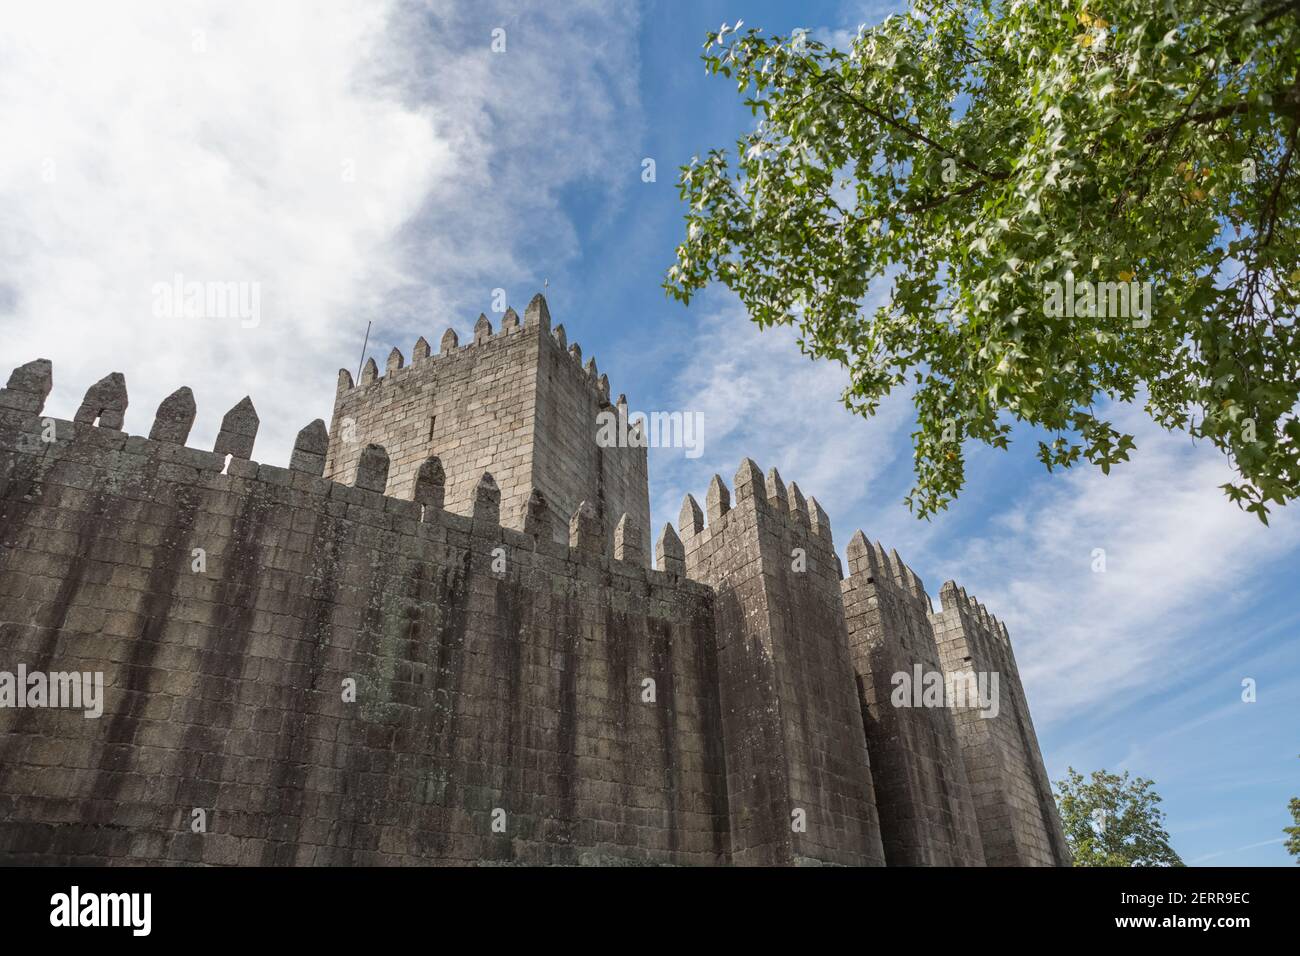 Guimares / Portugal 09 12 2020: Façade arrière vue sur le château de Guimares, un château médiéval emblématique, dans la région nord du Portugal Banque D'Images